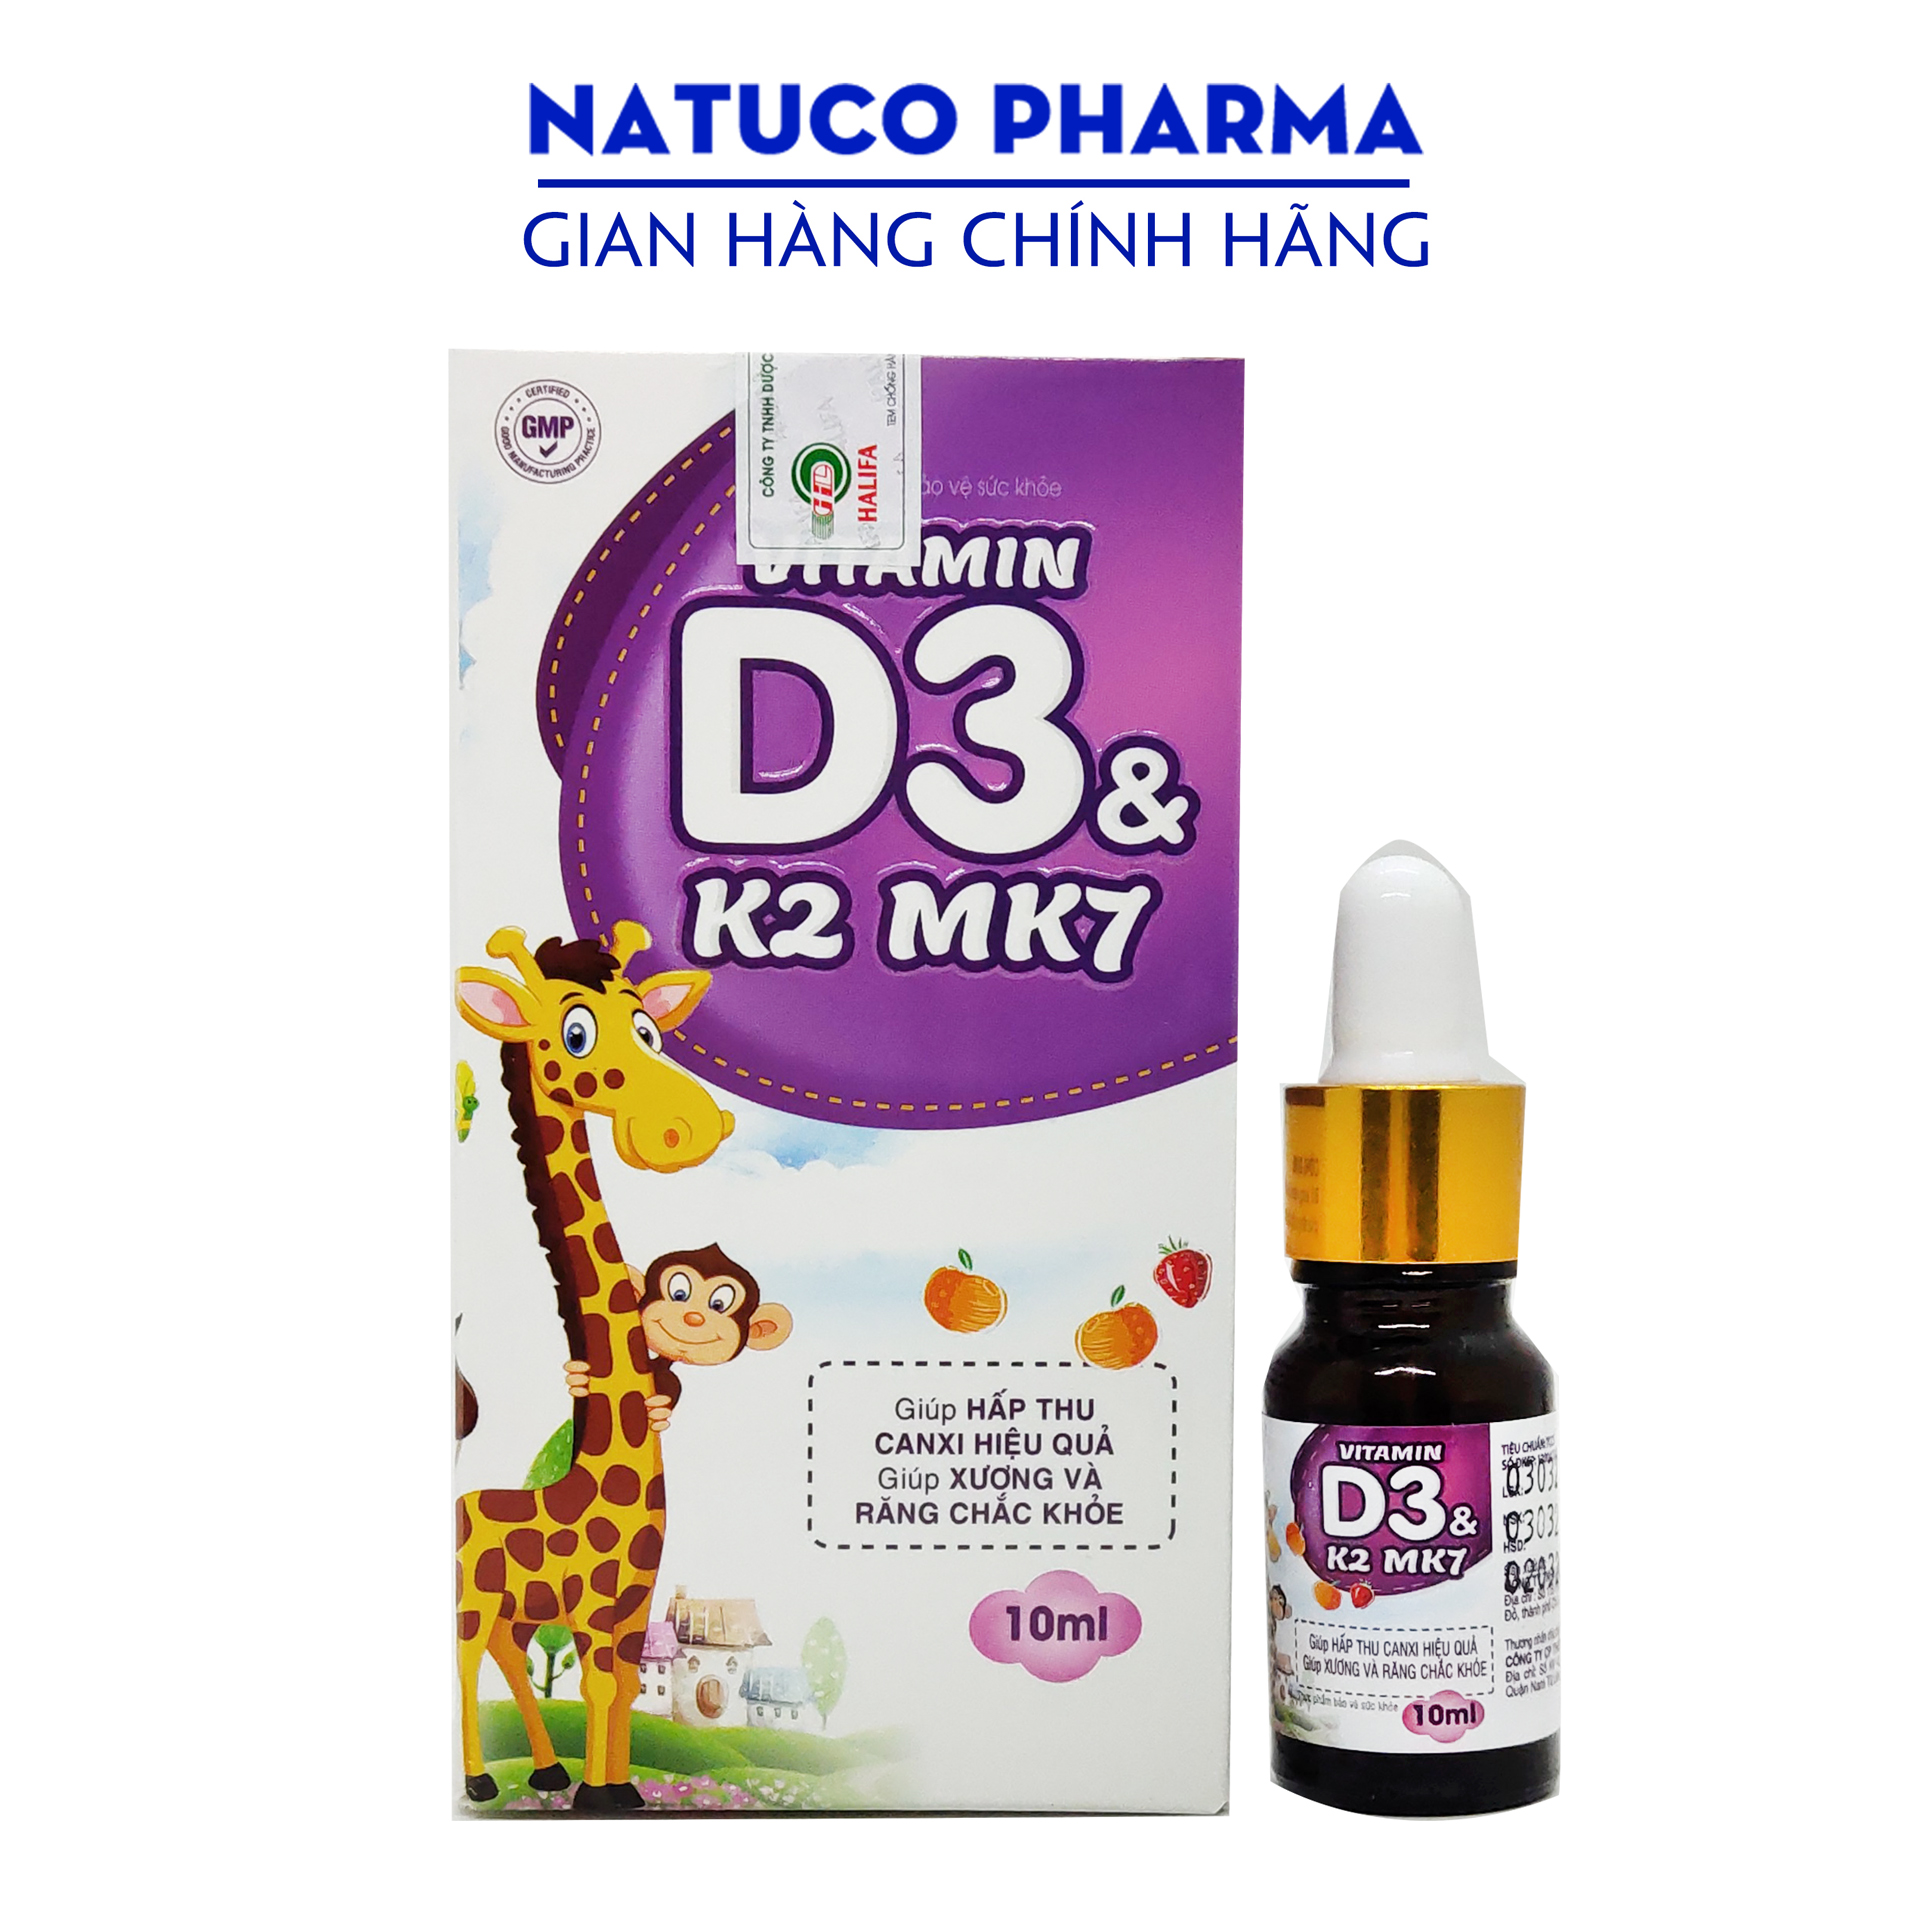 Vitamin D3 K2 Mk7 nhỏ giọt - Hàng chính hãng